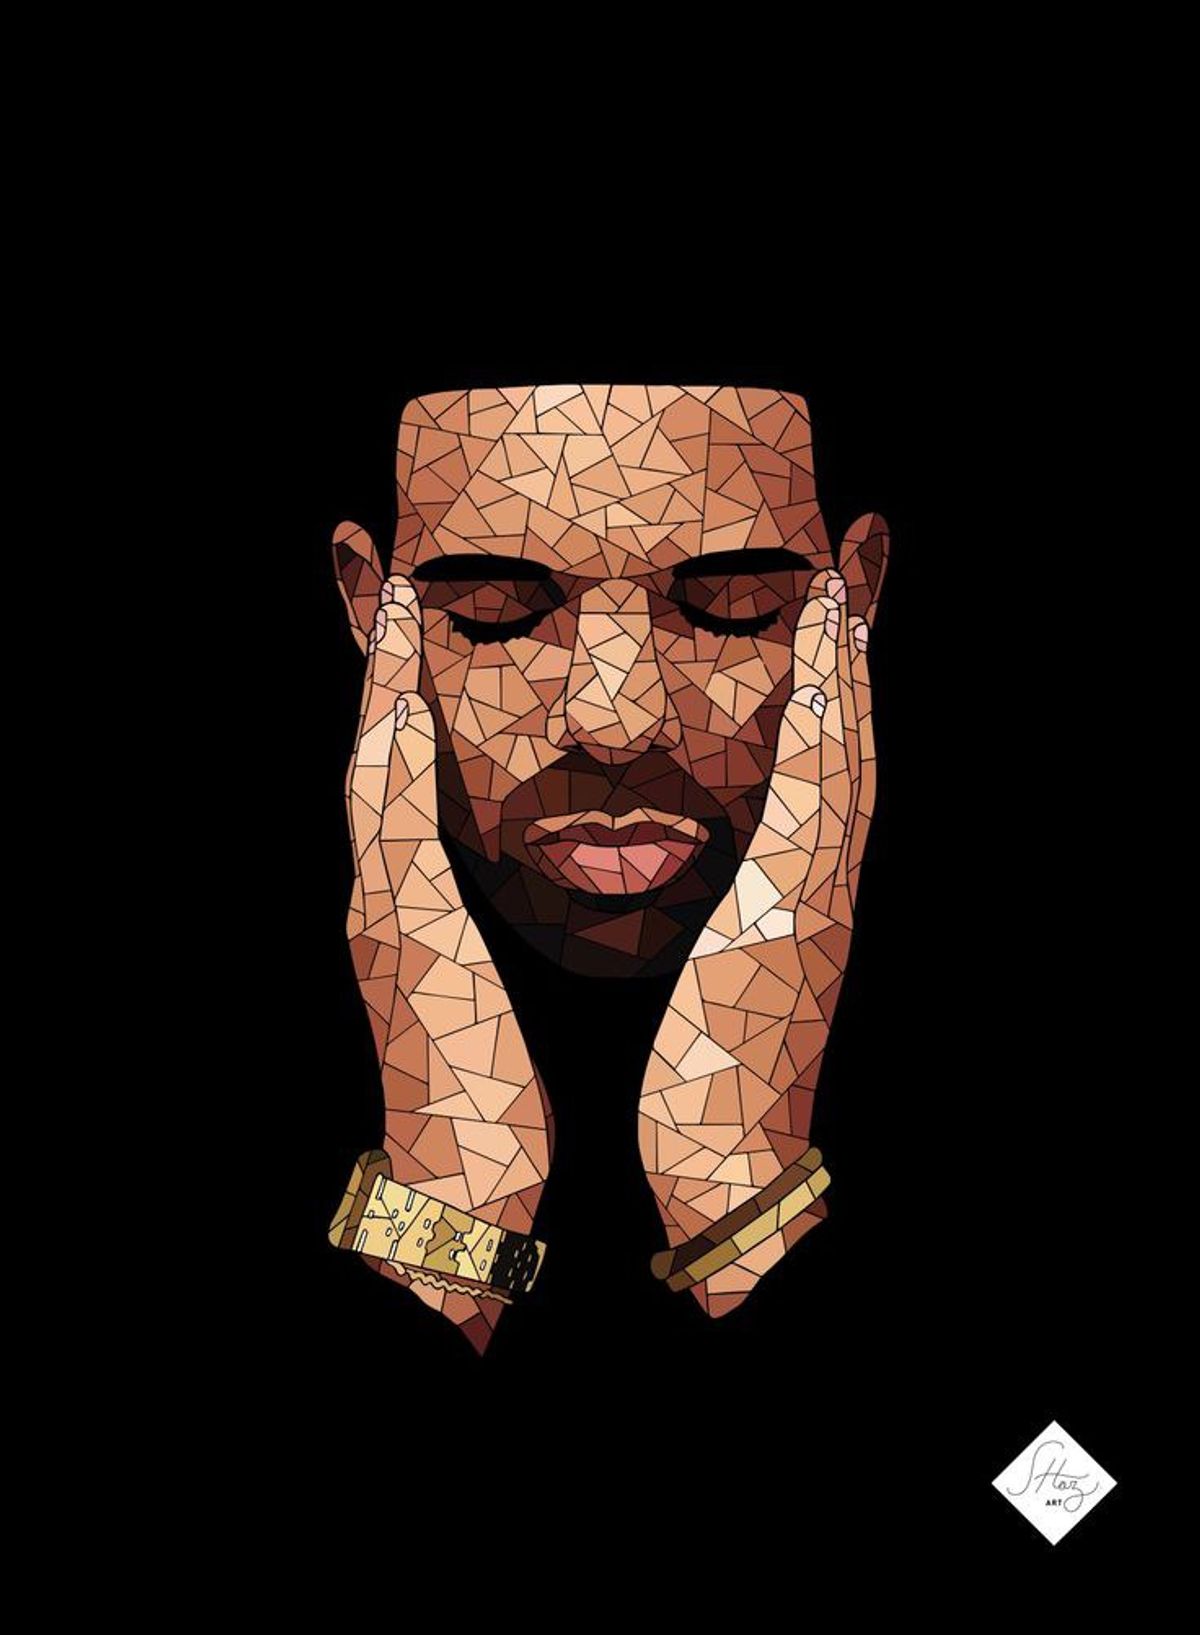 10 Drake Lyrics That Can Inspire Us